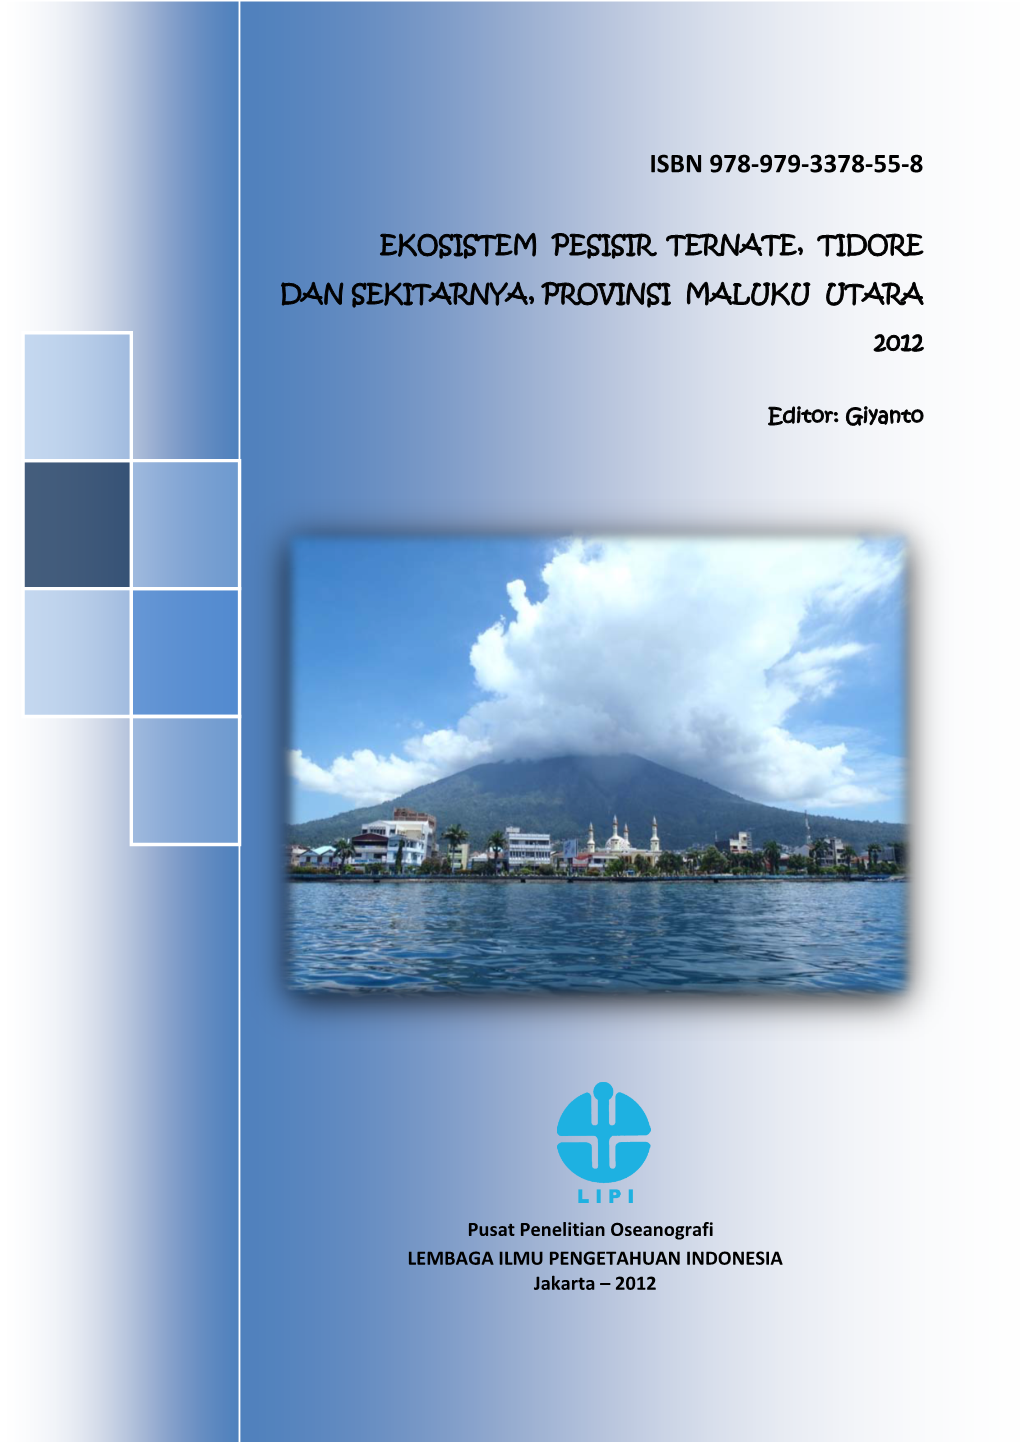 Ekosistem Pesisir Ternate, Tidore Dan Sekitarnya, Provinsi Maluku Utara